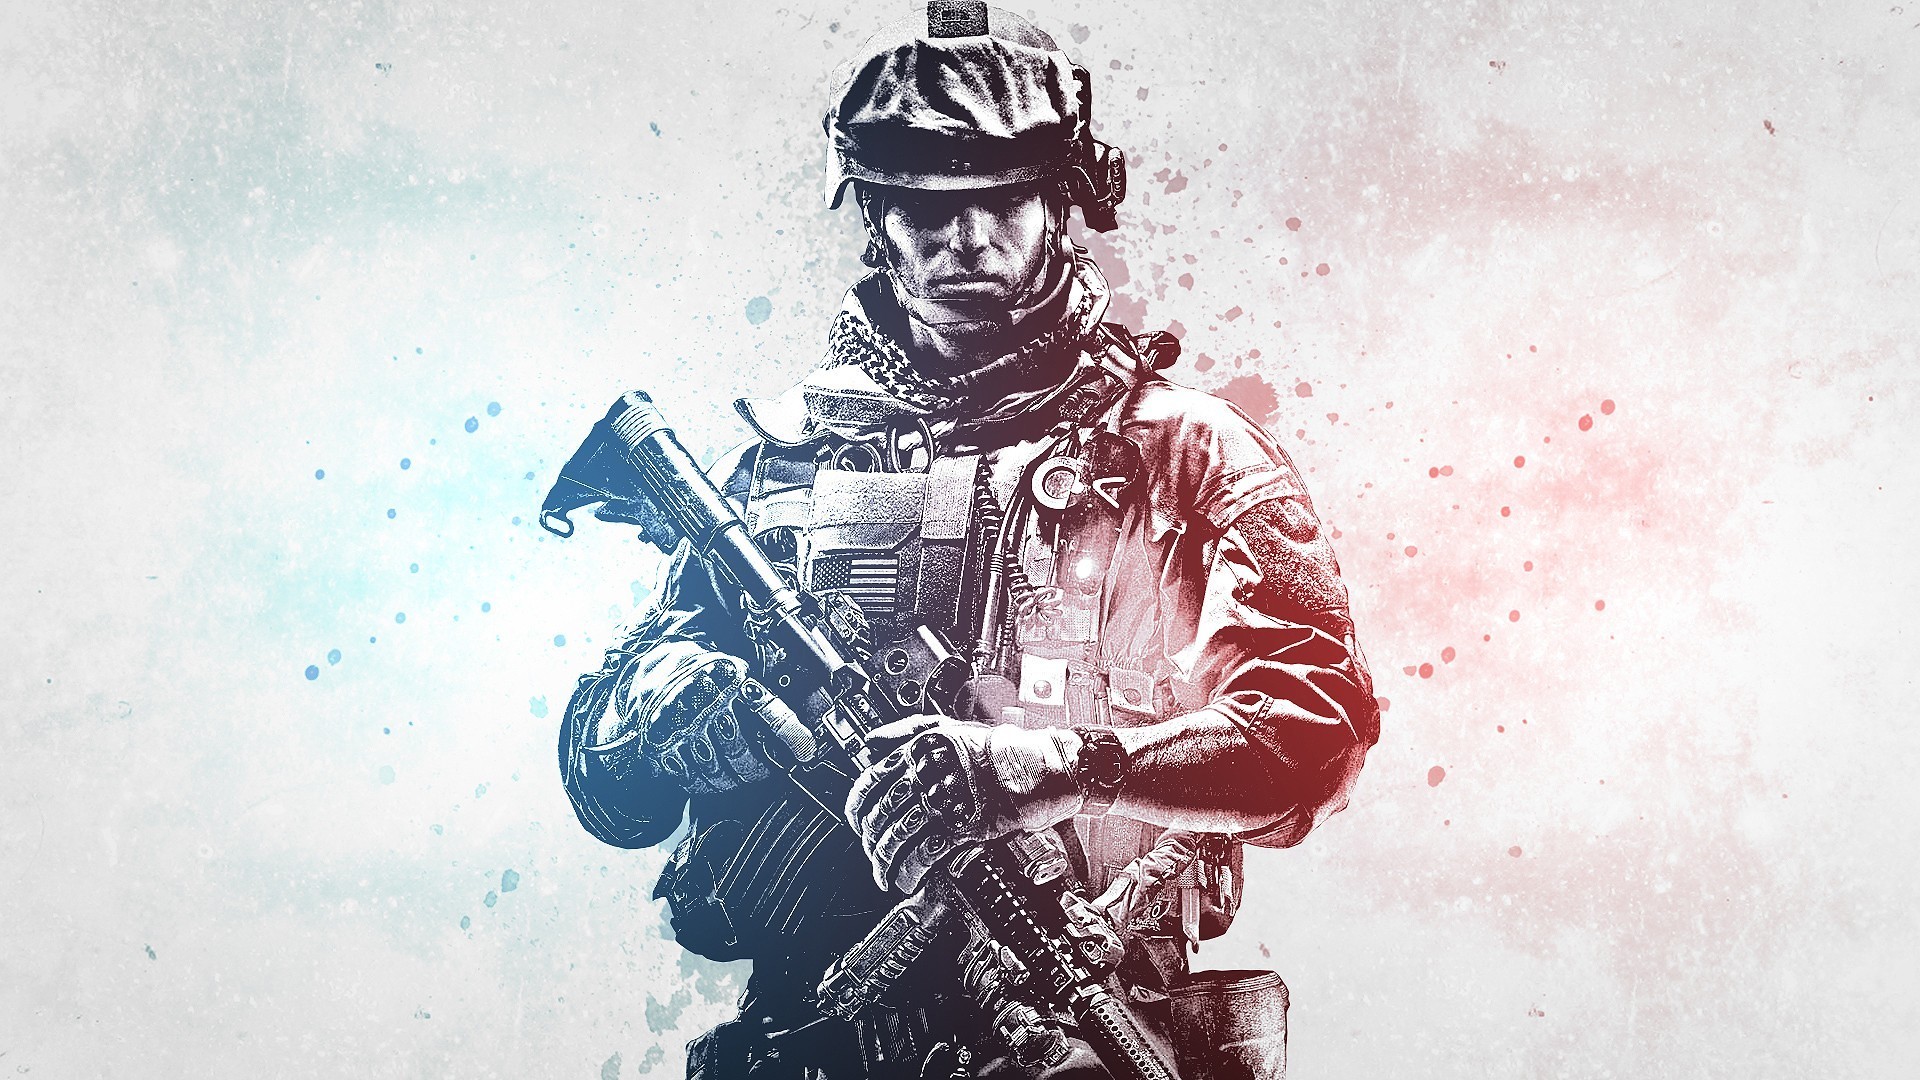 Бесплатное фото Картинка с солдатом из игры Battlefield 3